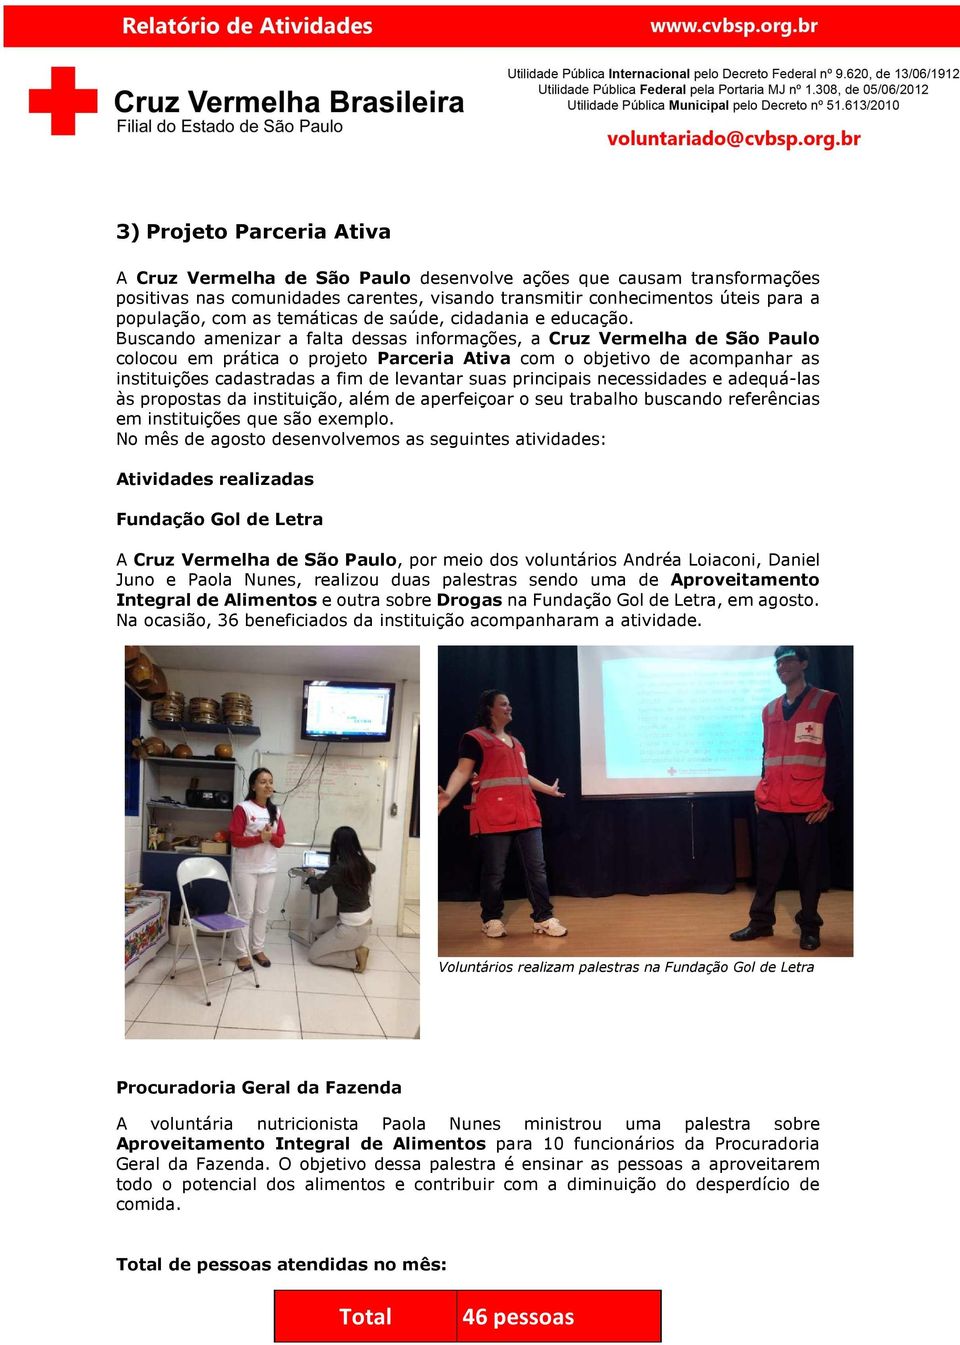 Buscando amenizar a falta dessas informações, a Cruz Vermelha de São Paulo colocou em prática o projeto Parceria Ativa com o objetivo de acompanhar as instituições cadastradas a fim de levantar suas